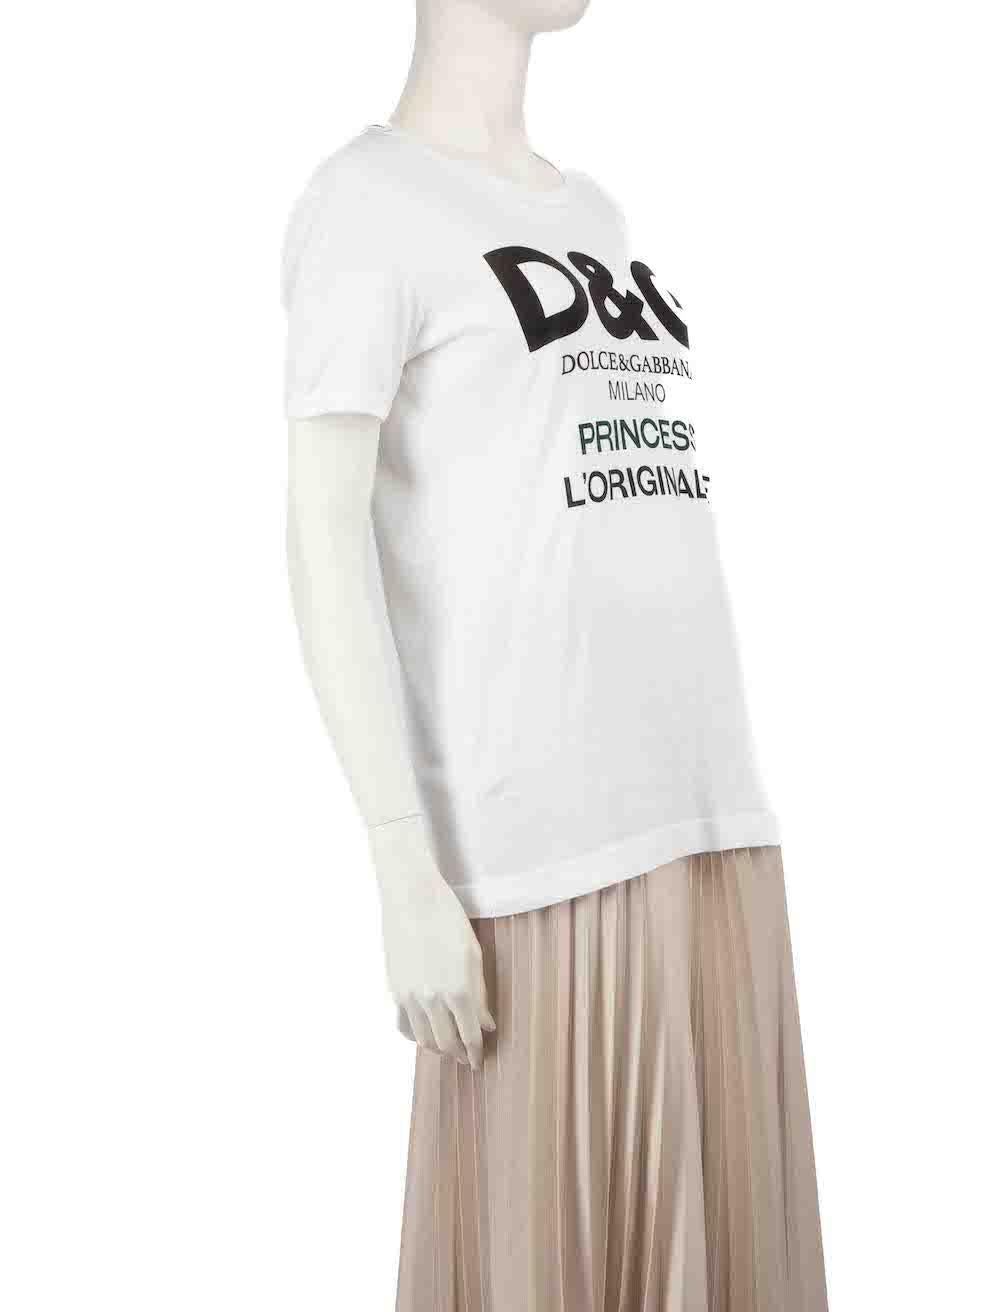 L'ÉTAT est très bon. Cet article de revente Dolce & Gabbana d'occasion ne présente pratiquement aucune trace d'usure visible sur le t-shirt.
 
 
 
 Détails
 
 
 Blanc
 
 Coton
 
 T-shirt à manches courtes
 
 Extensible
 
 Encolure ronde
 
